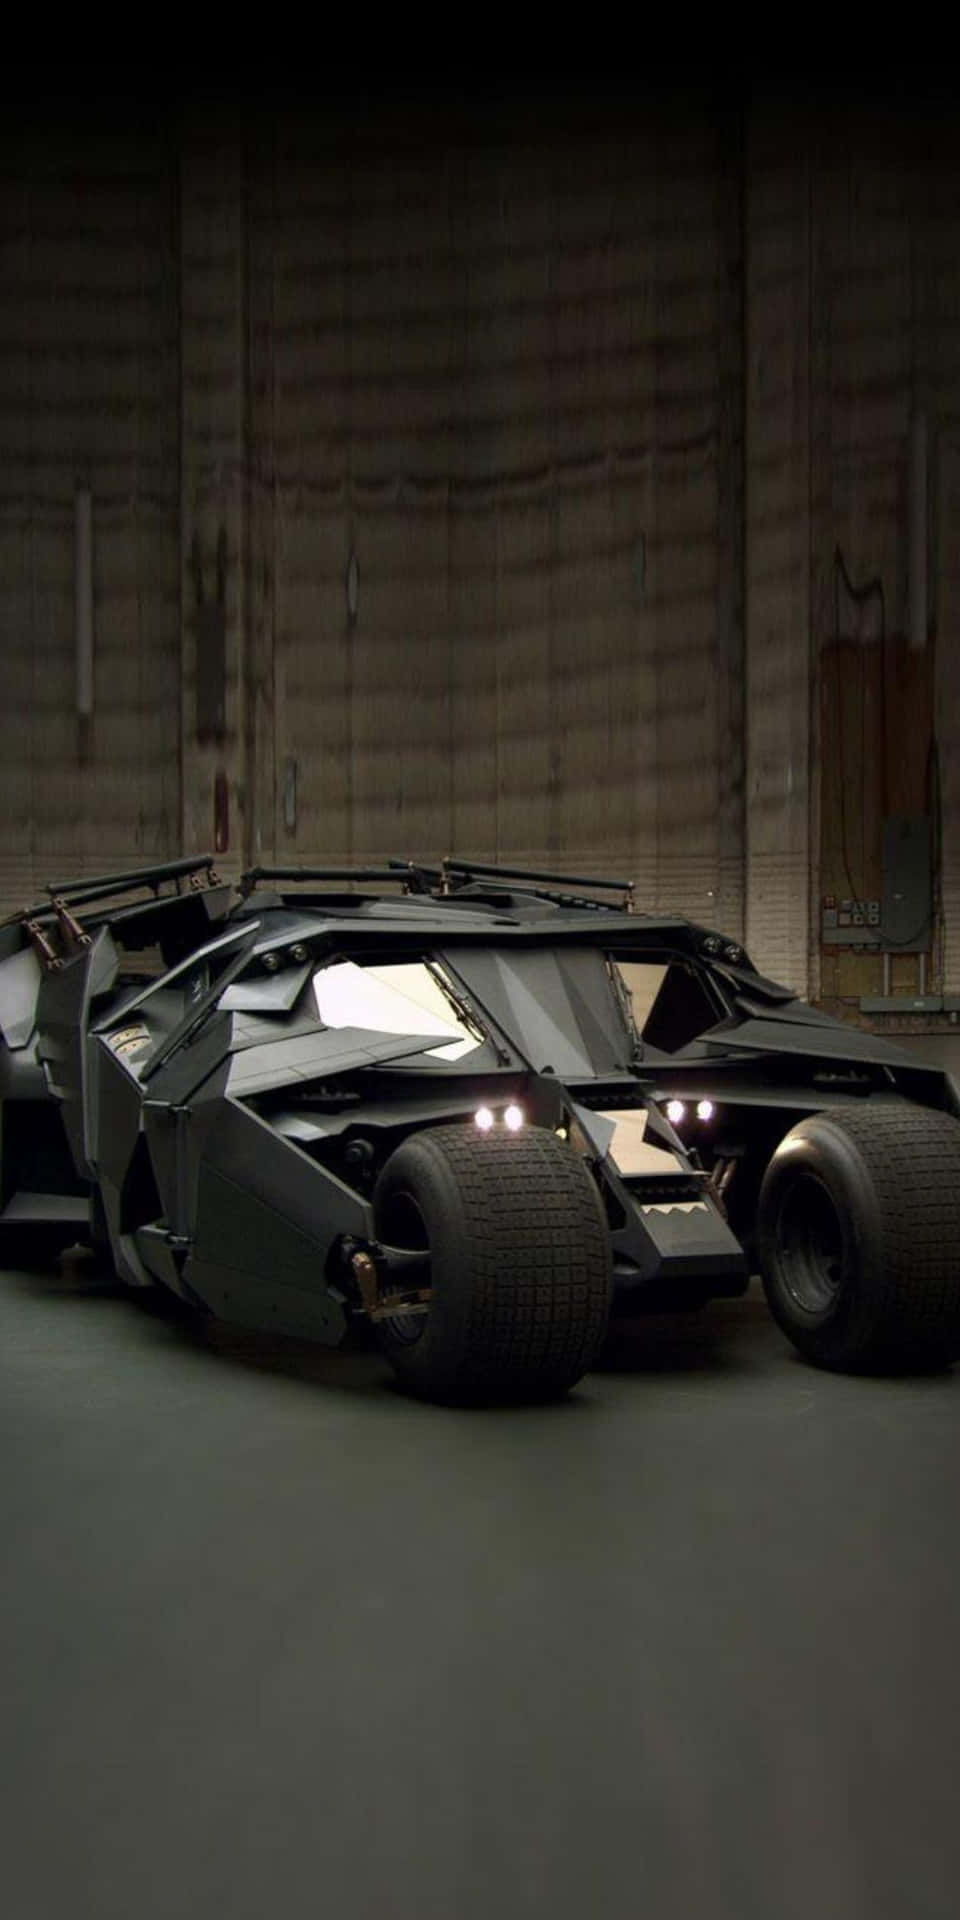 Batmanbatmobilen I The Dark Knight Rises.